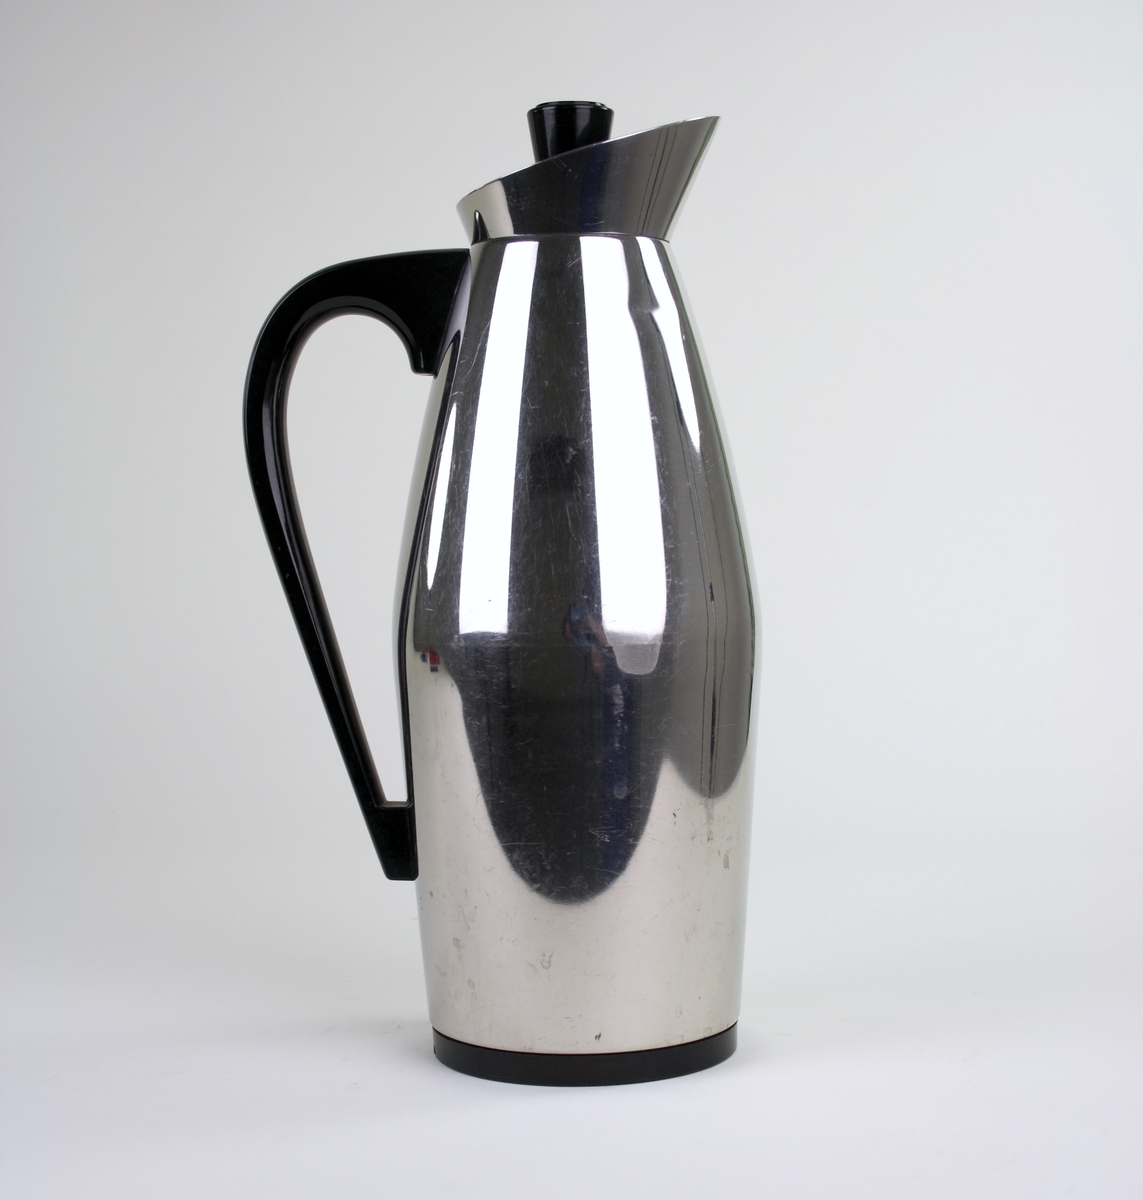 Termos kaffekanna, Sissi rostfritt stål tillverkad av Nils Johan. Bottenplatta i svart plast samt handtag och knopp i samma material.